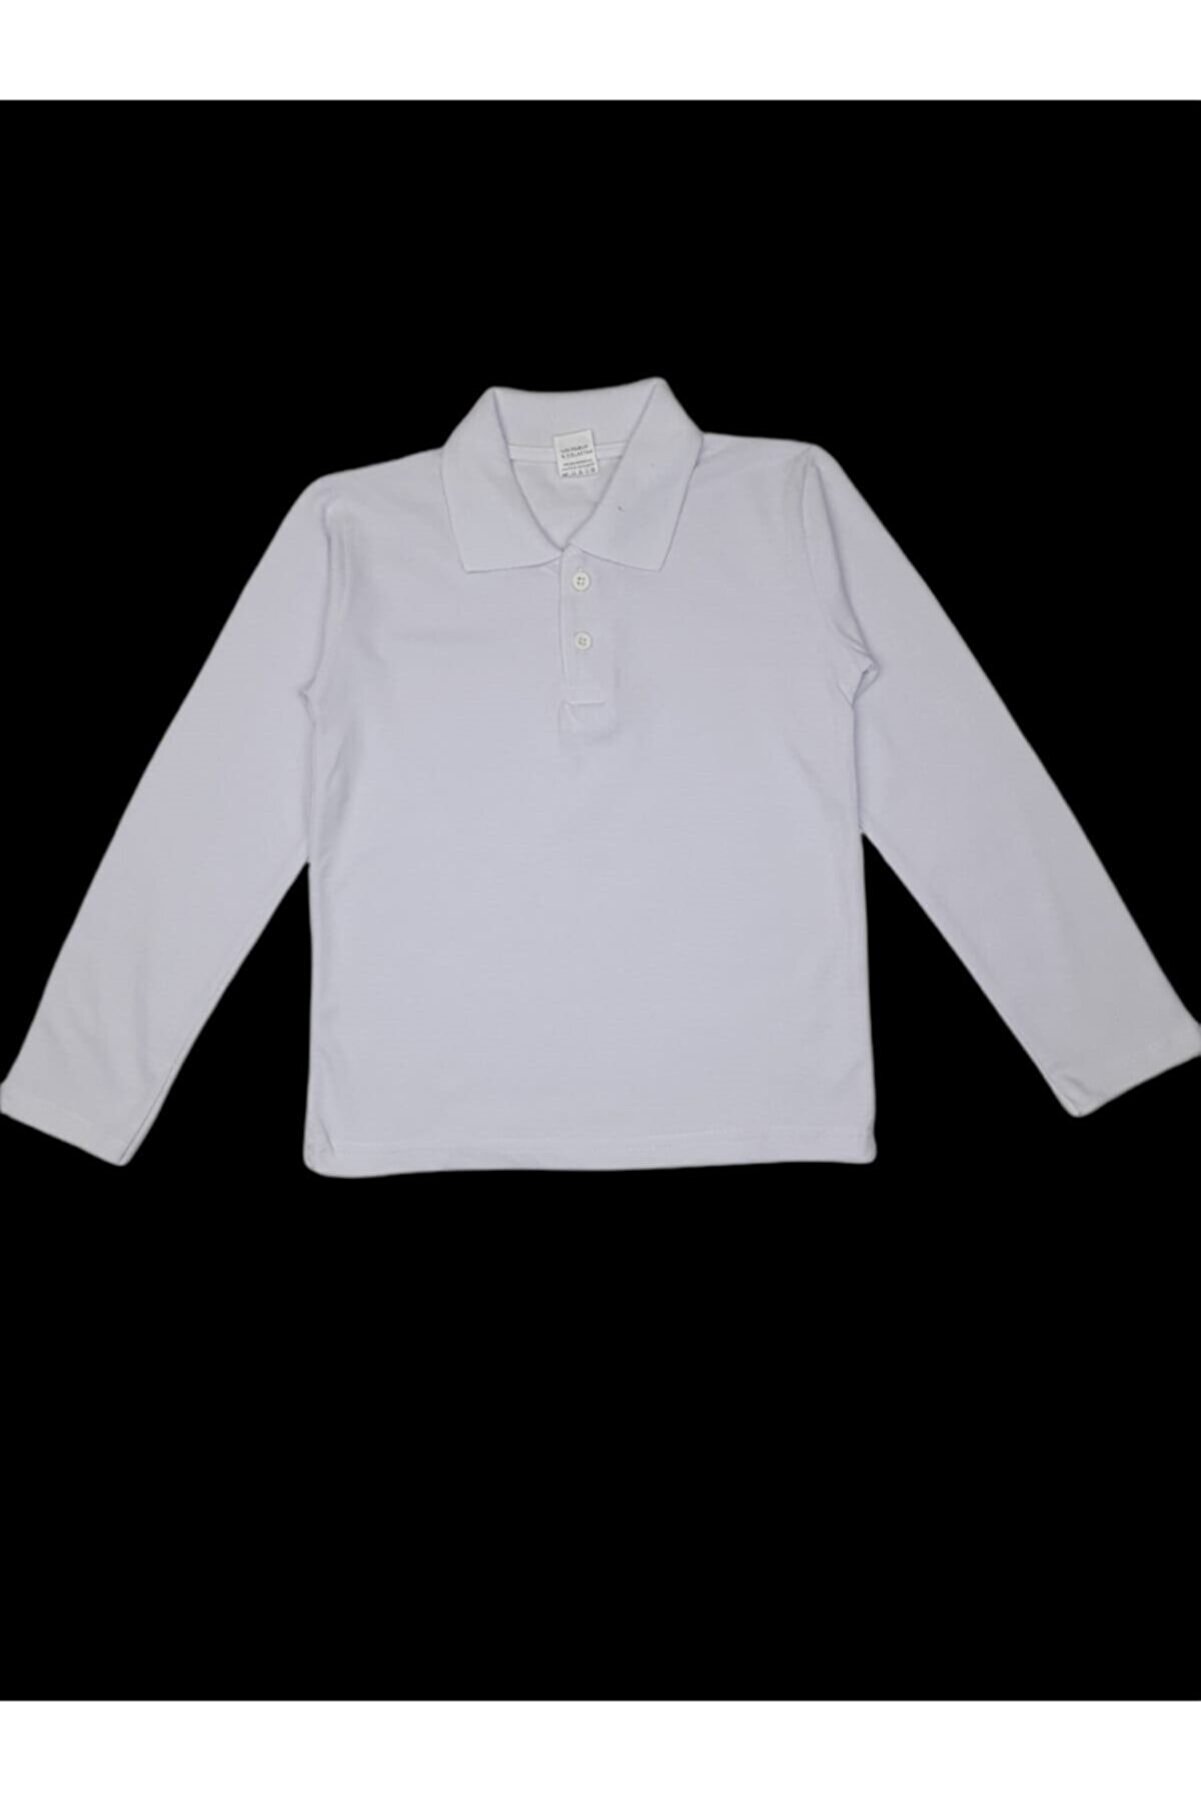 DUDO GİYİM Beyaz Polo Yaka Basic Uzun Kollu Kız - Erkek Çocuk Tişört